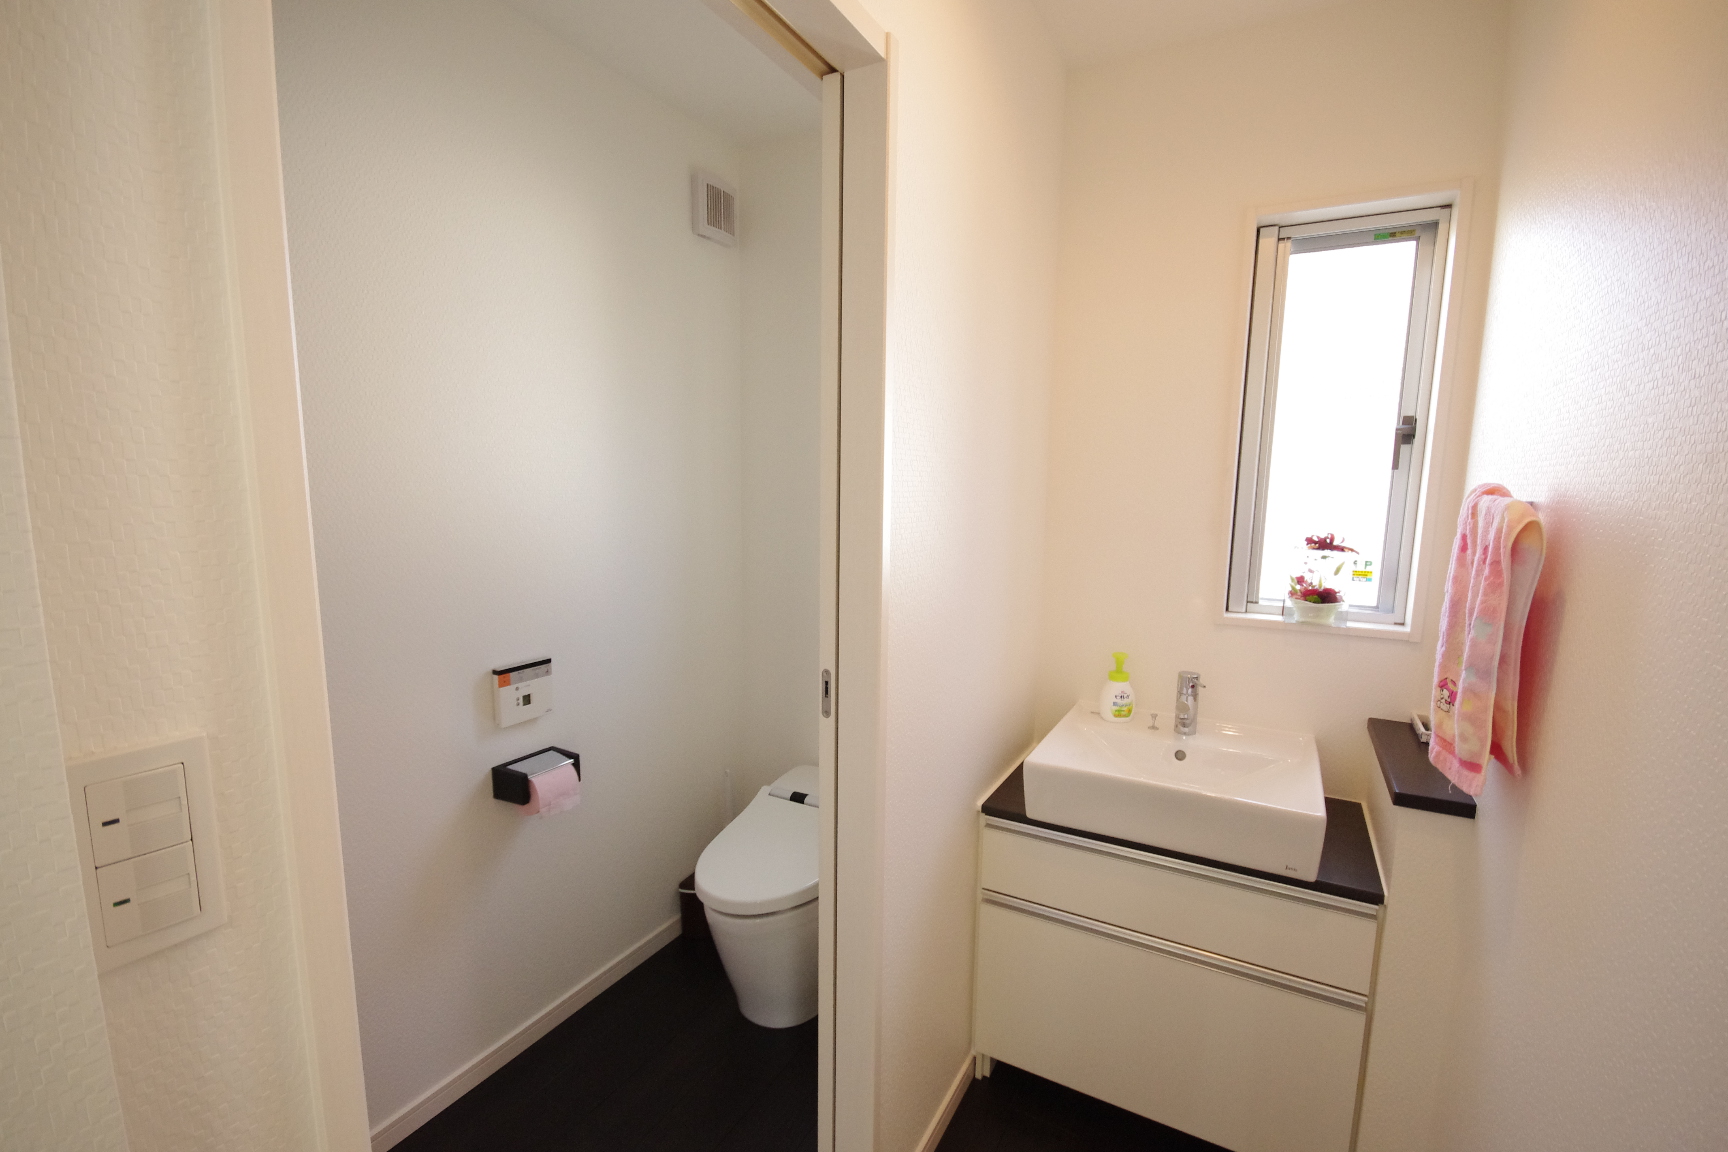 1階にはトイレと洗面のみで、お風呂は2階にもっていき、その分LDKに空間をまわした